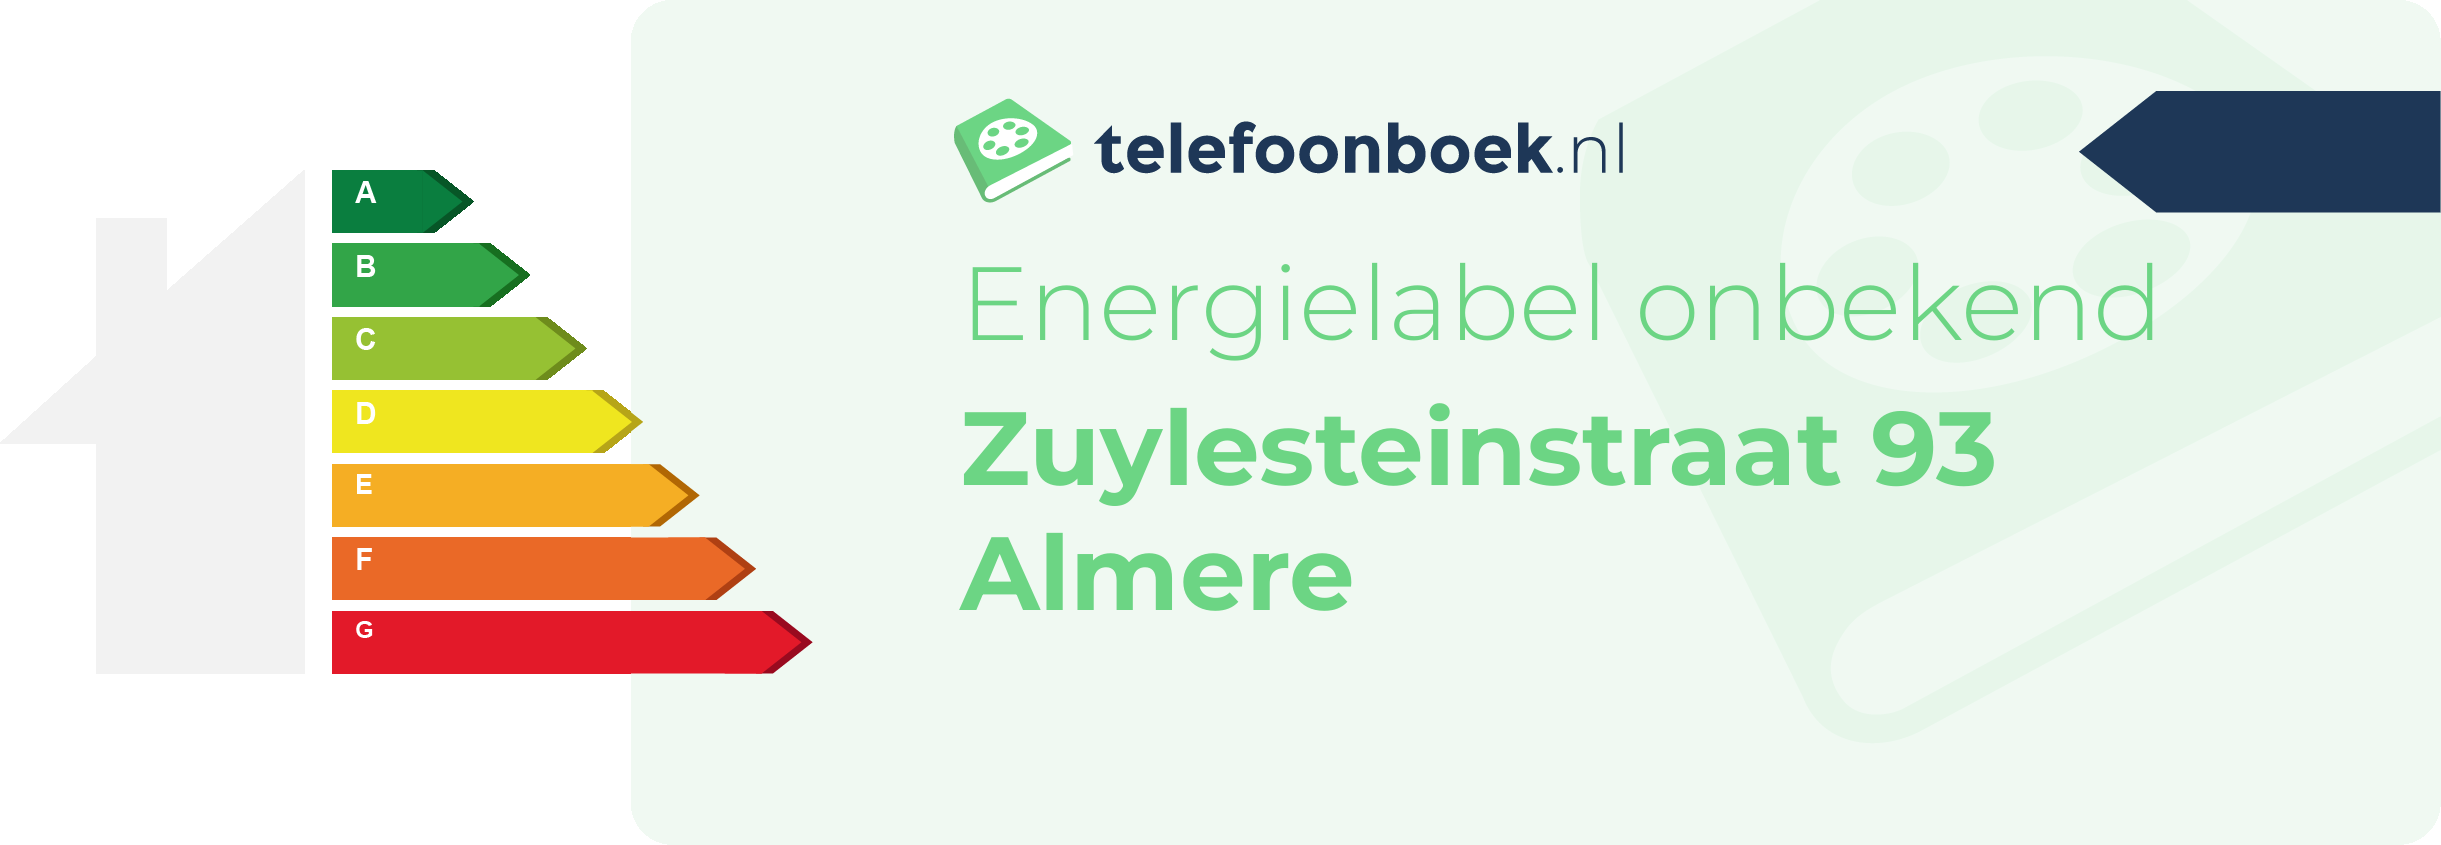 Energielabel Zuylesteinstraat 93 Almere